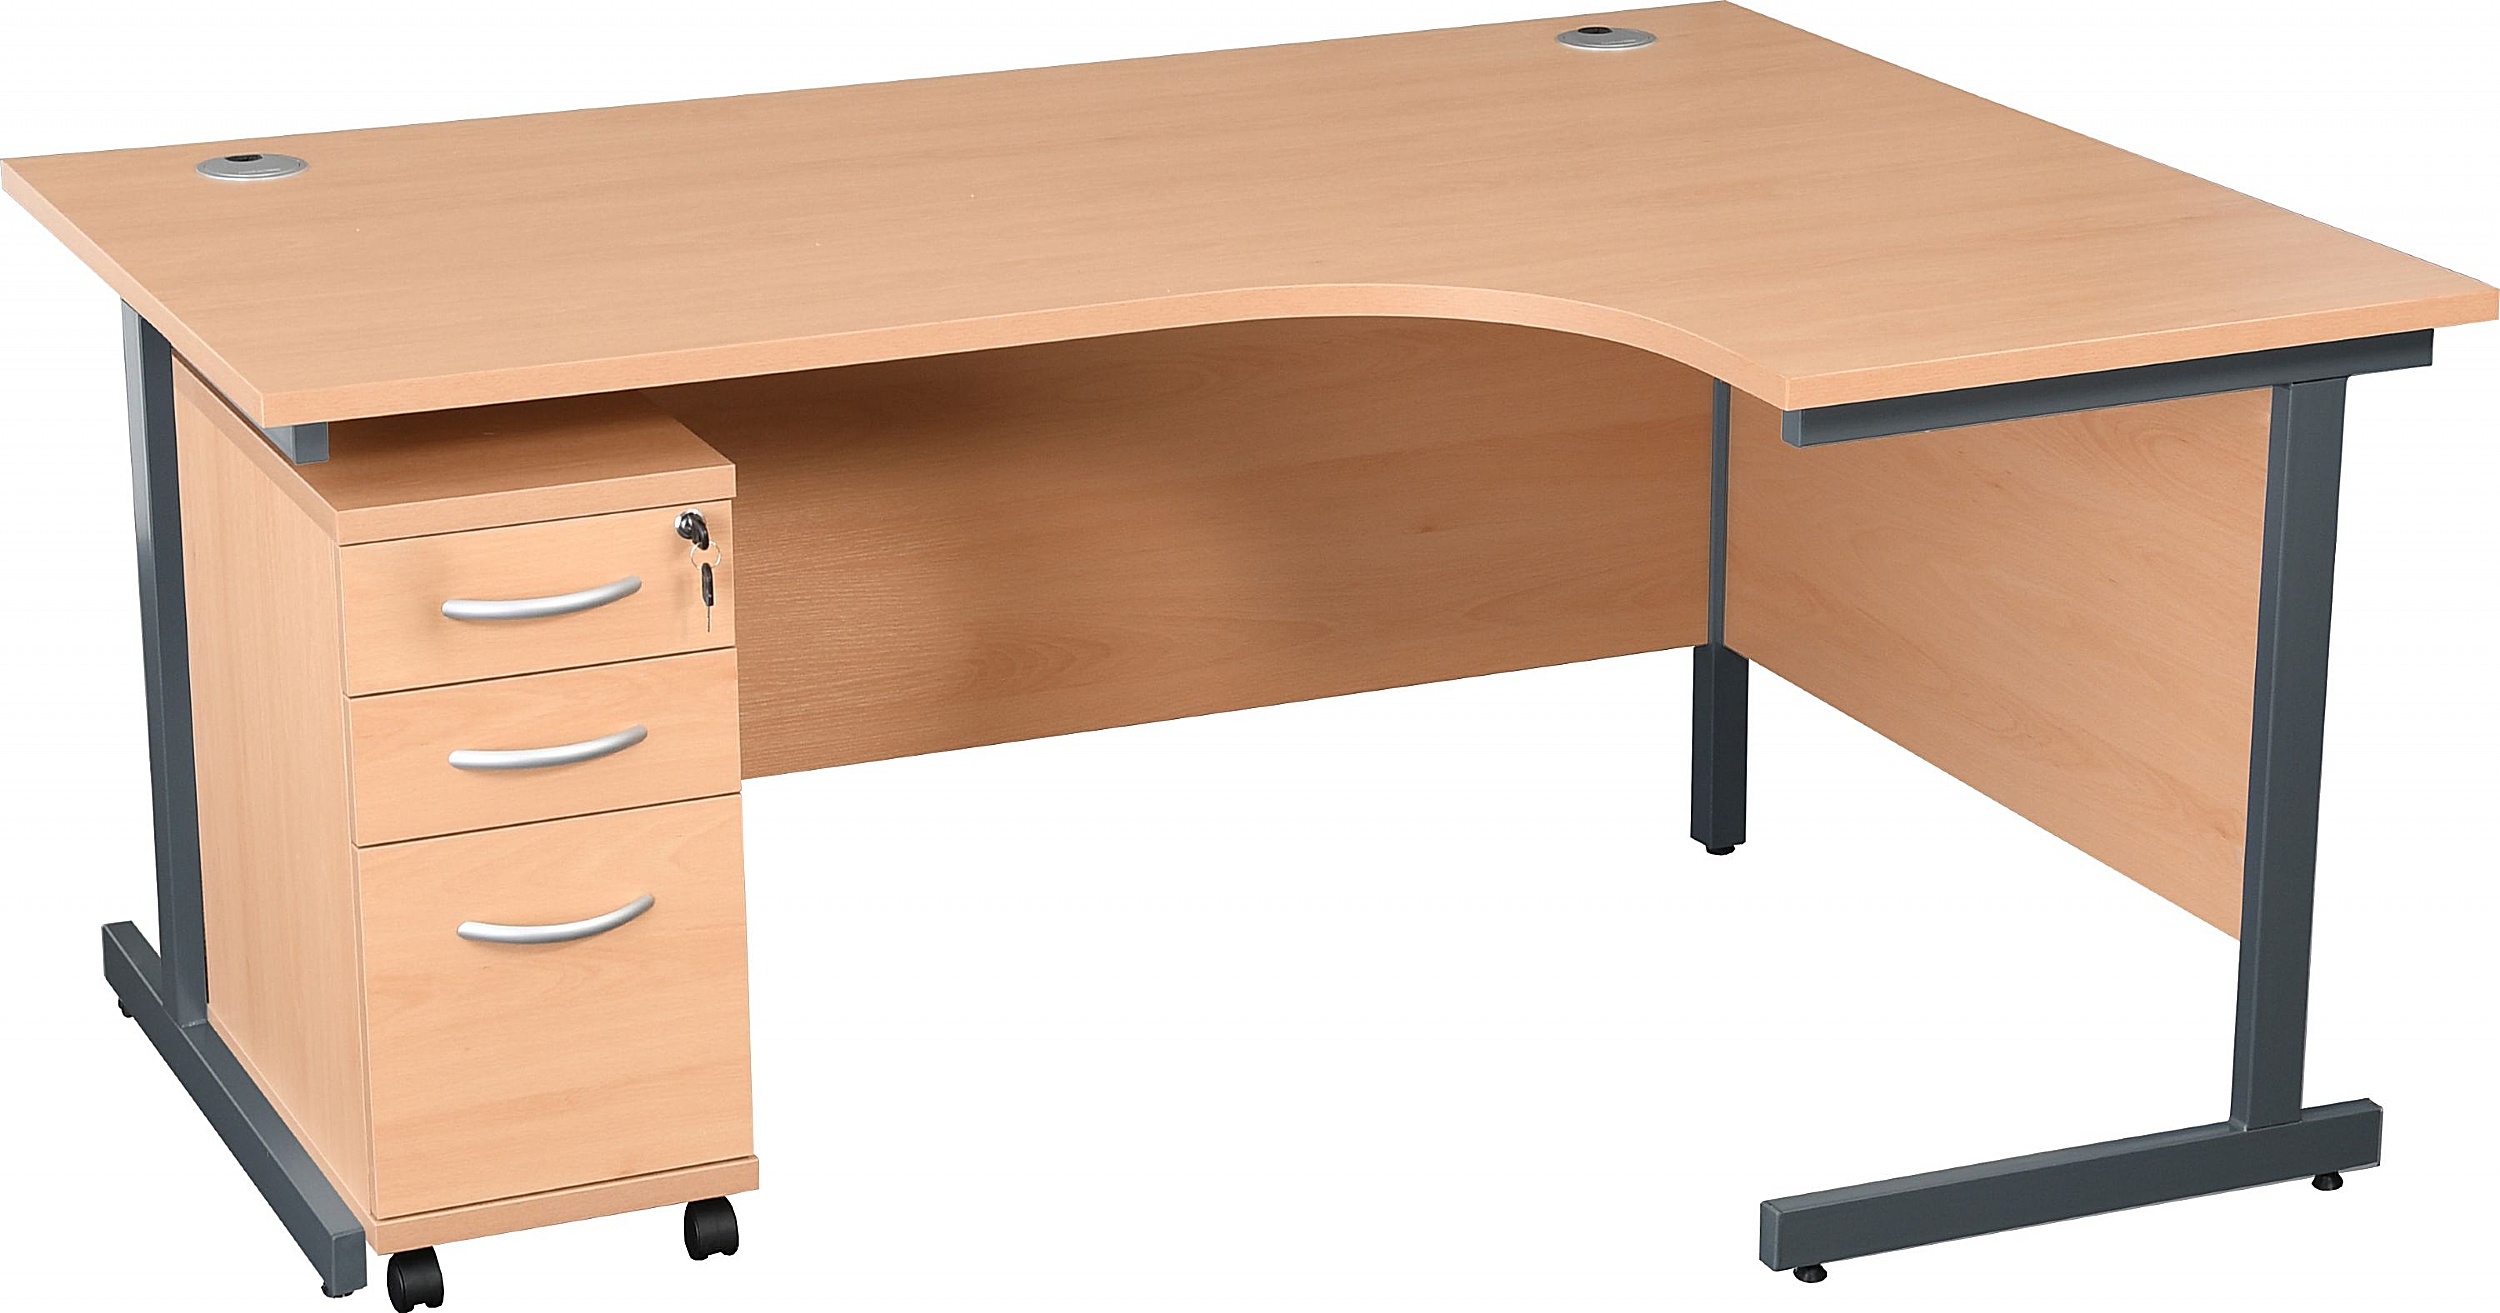 Karbon K1 Ergonomic Cantilever Office Desks With Narrow Under Desk Pedestal